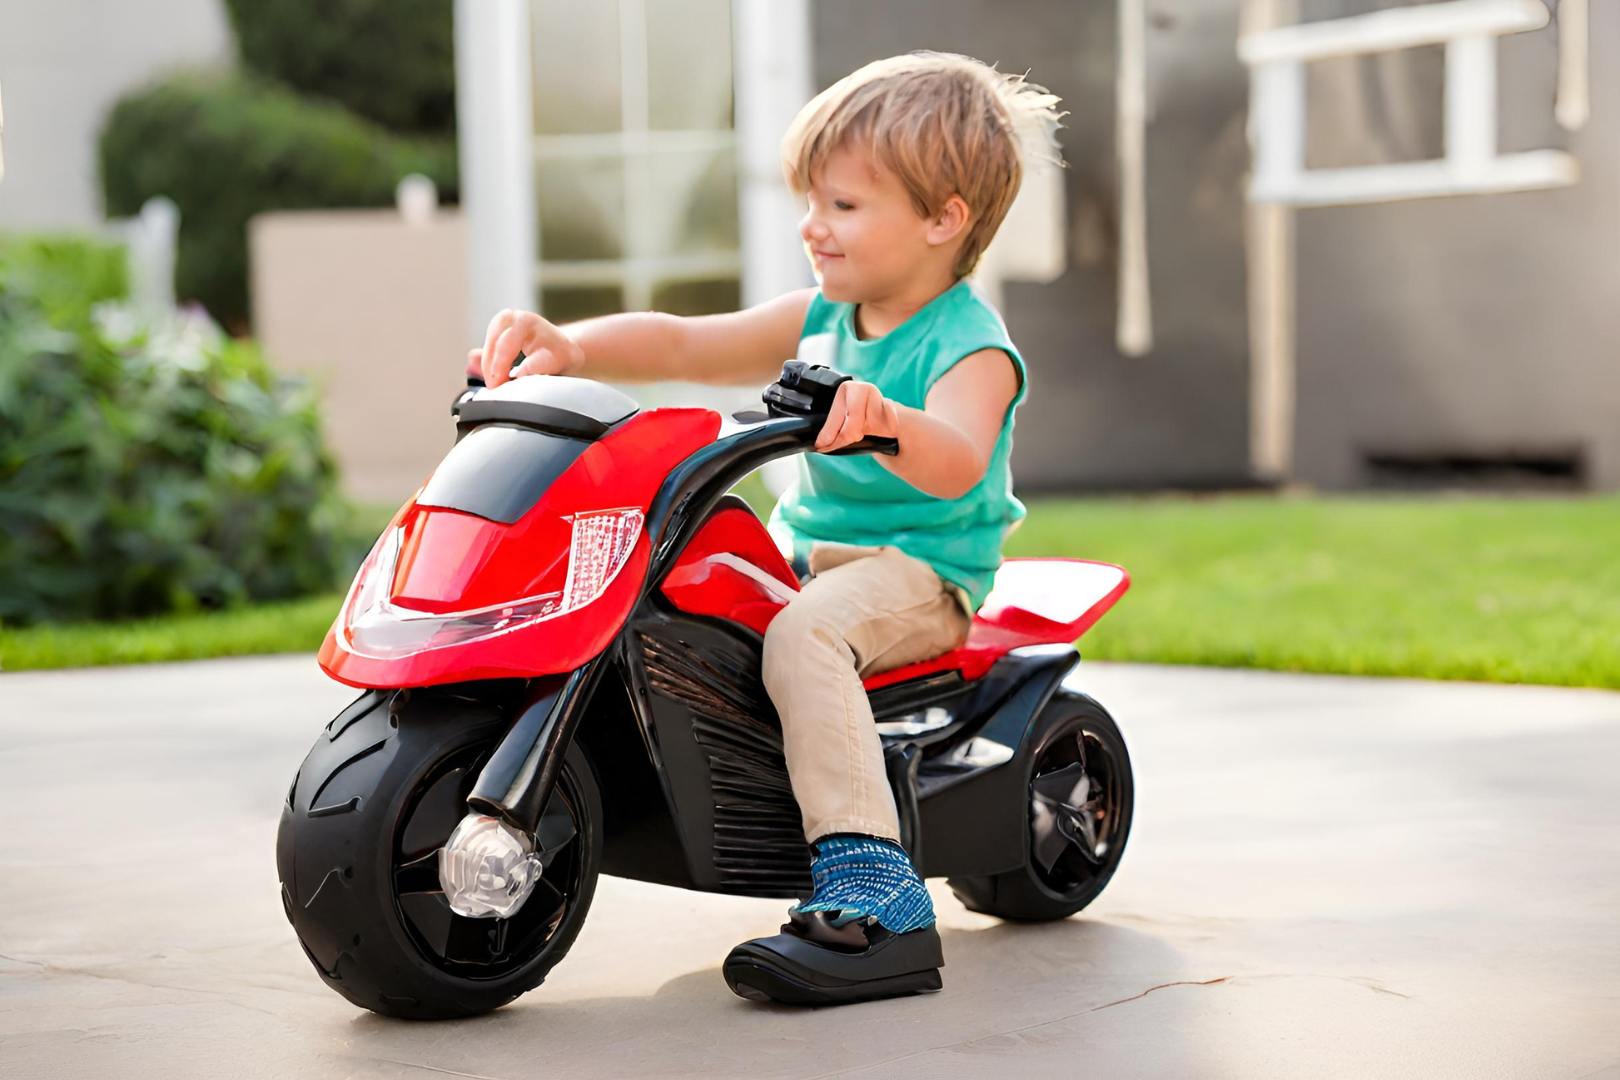 Melhores Motos Elétricas Infantis: Guia completo